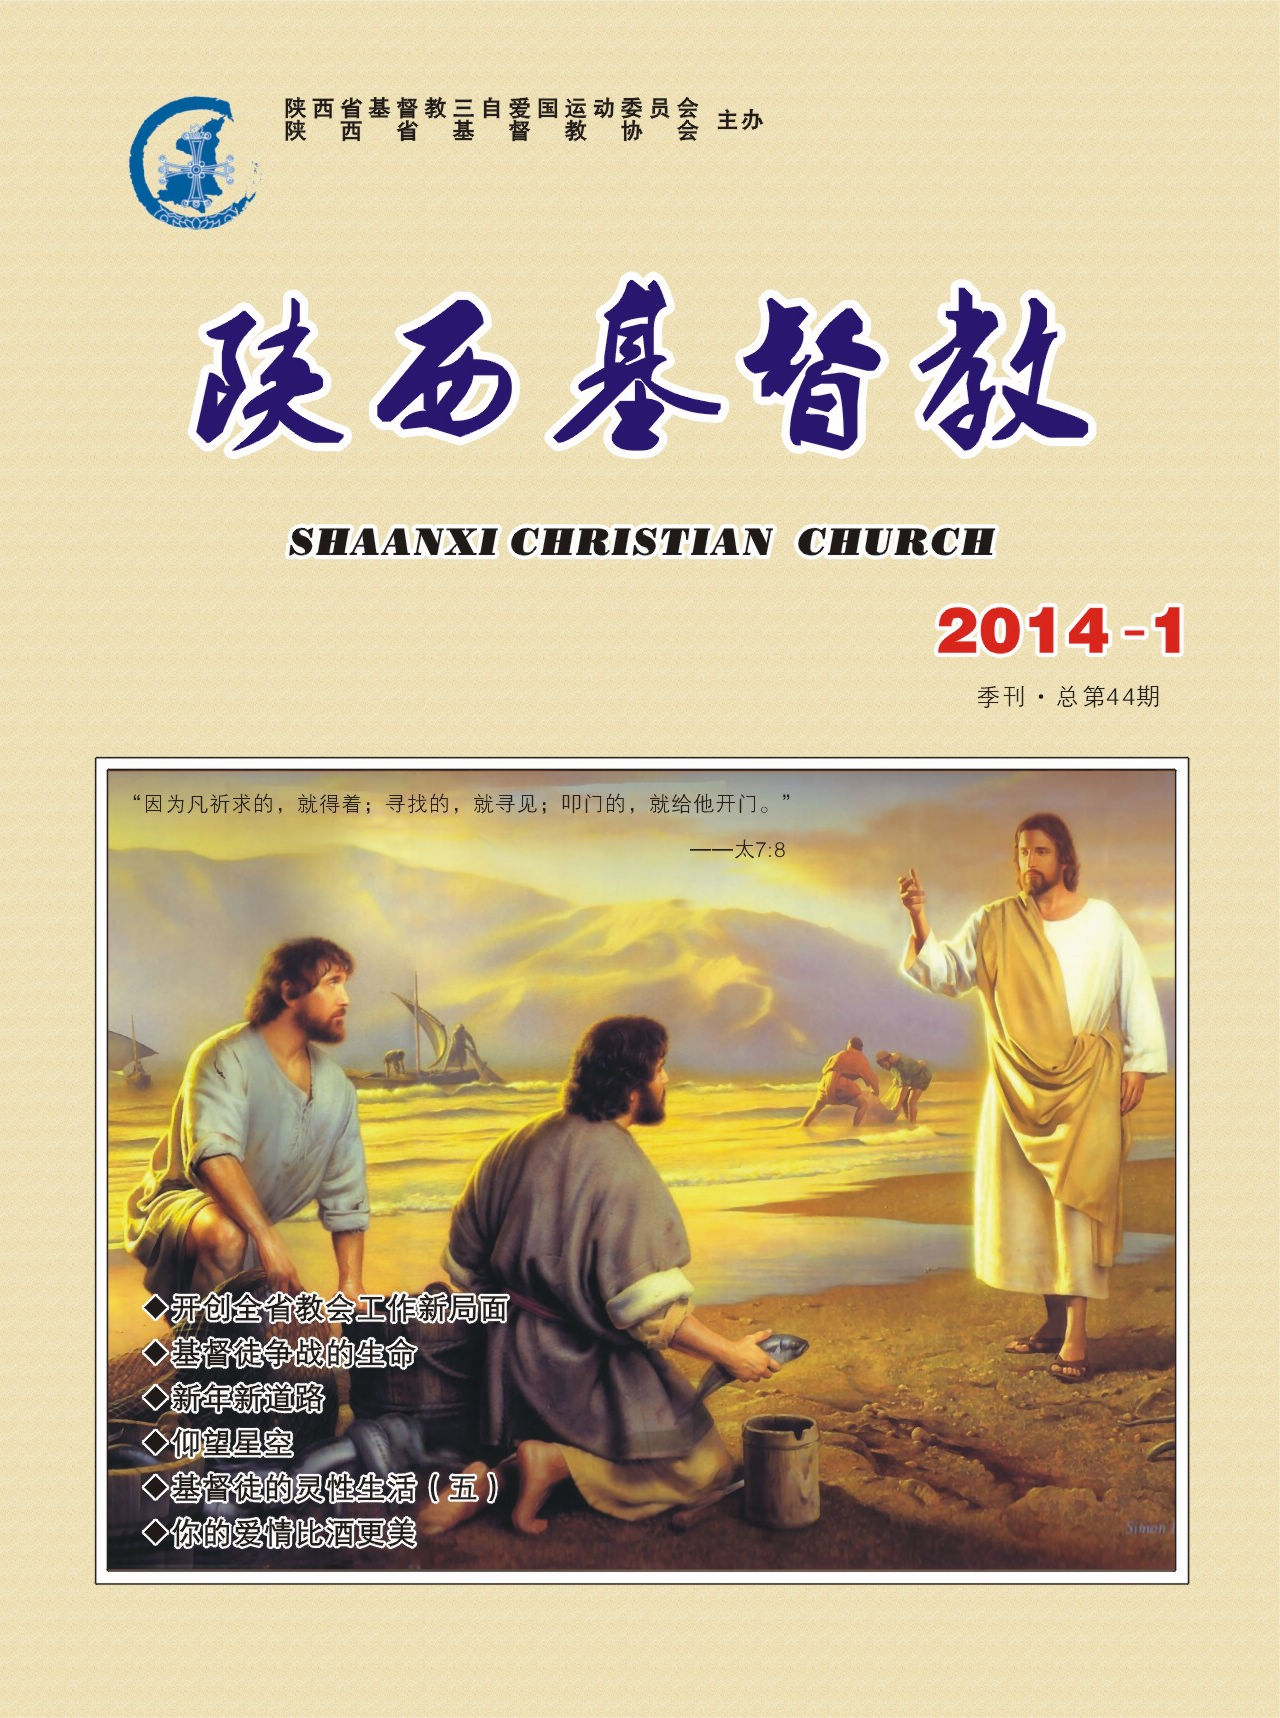 《陕西基督教》2014年第1期(图1)